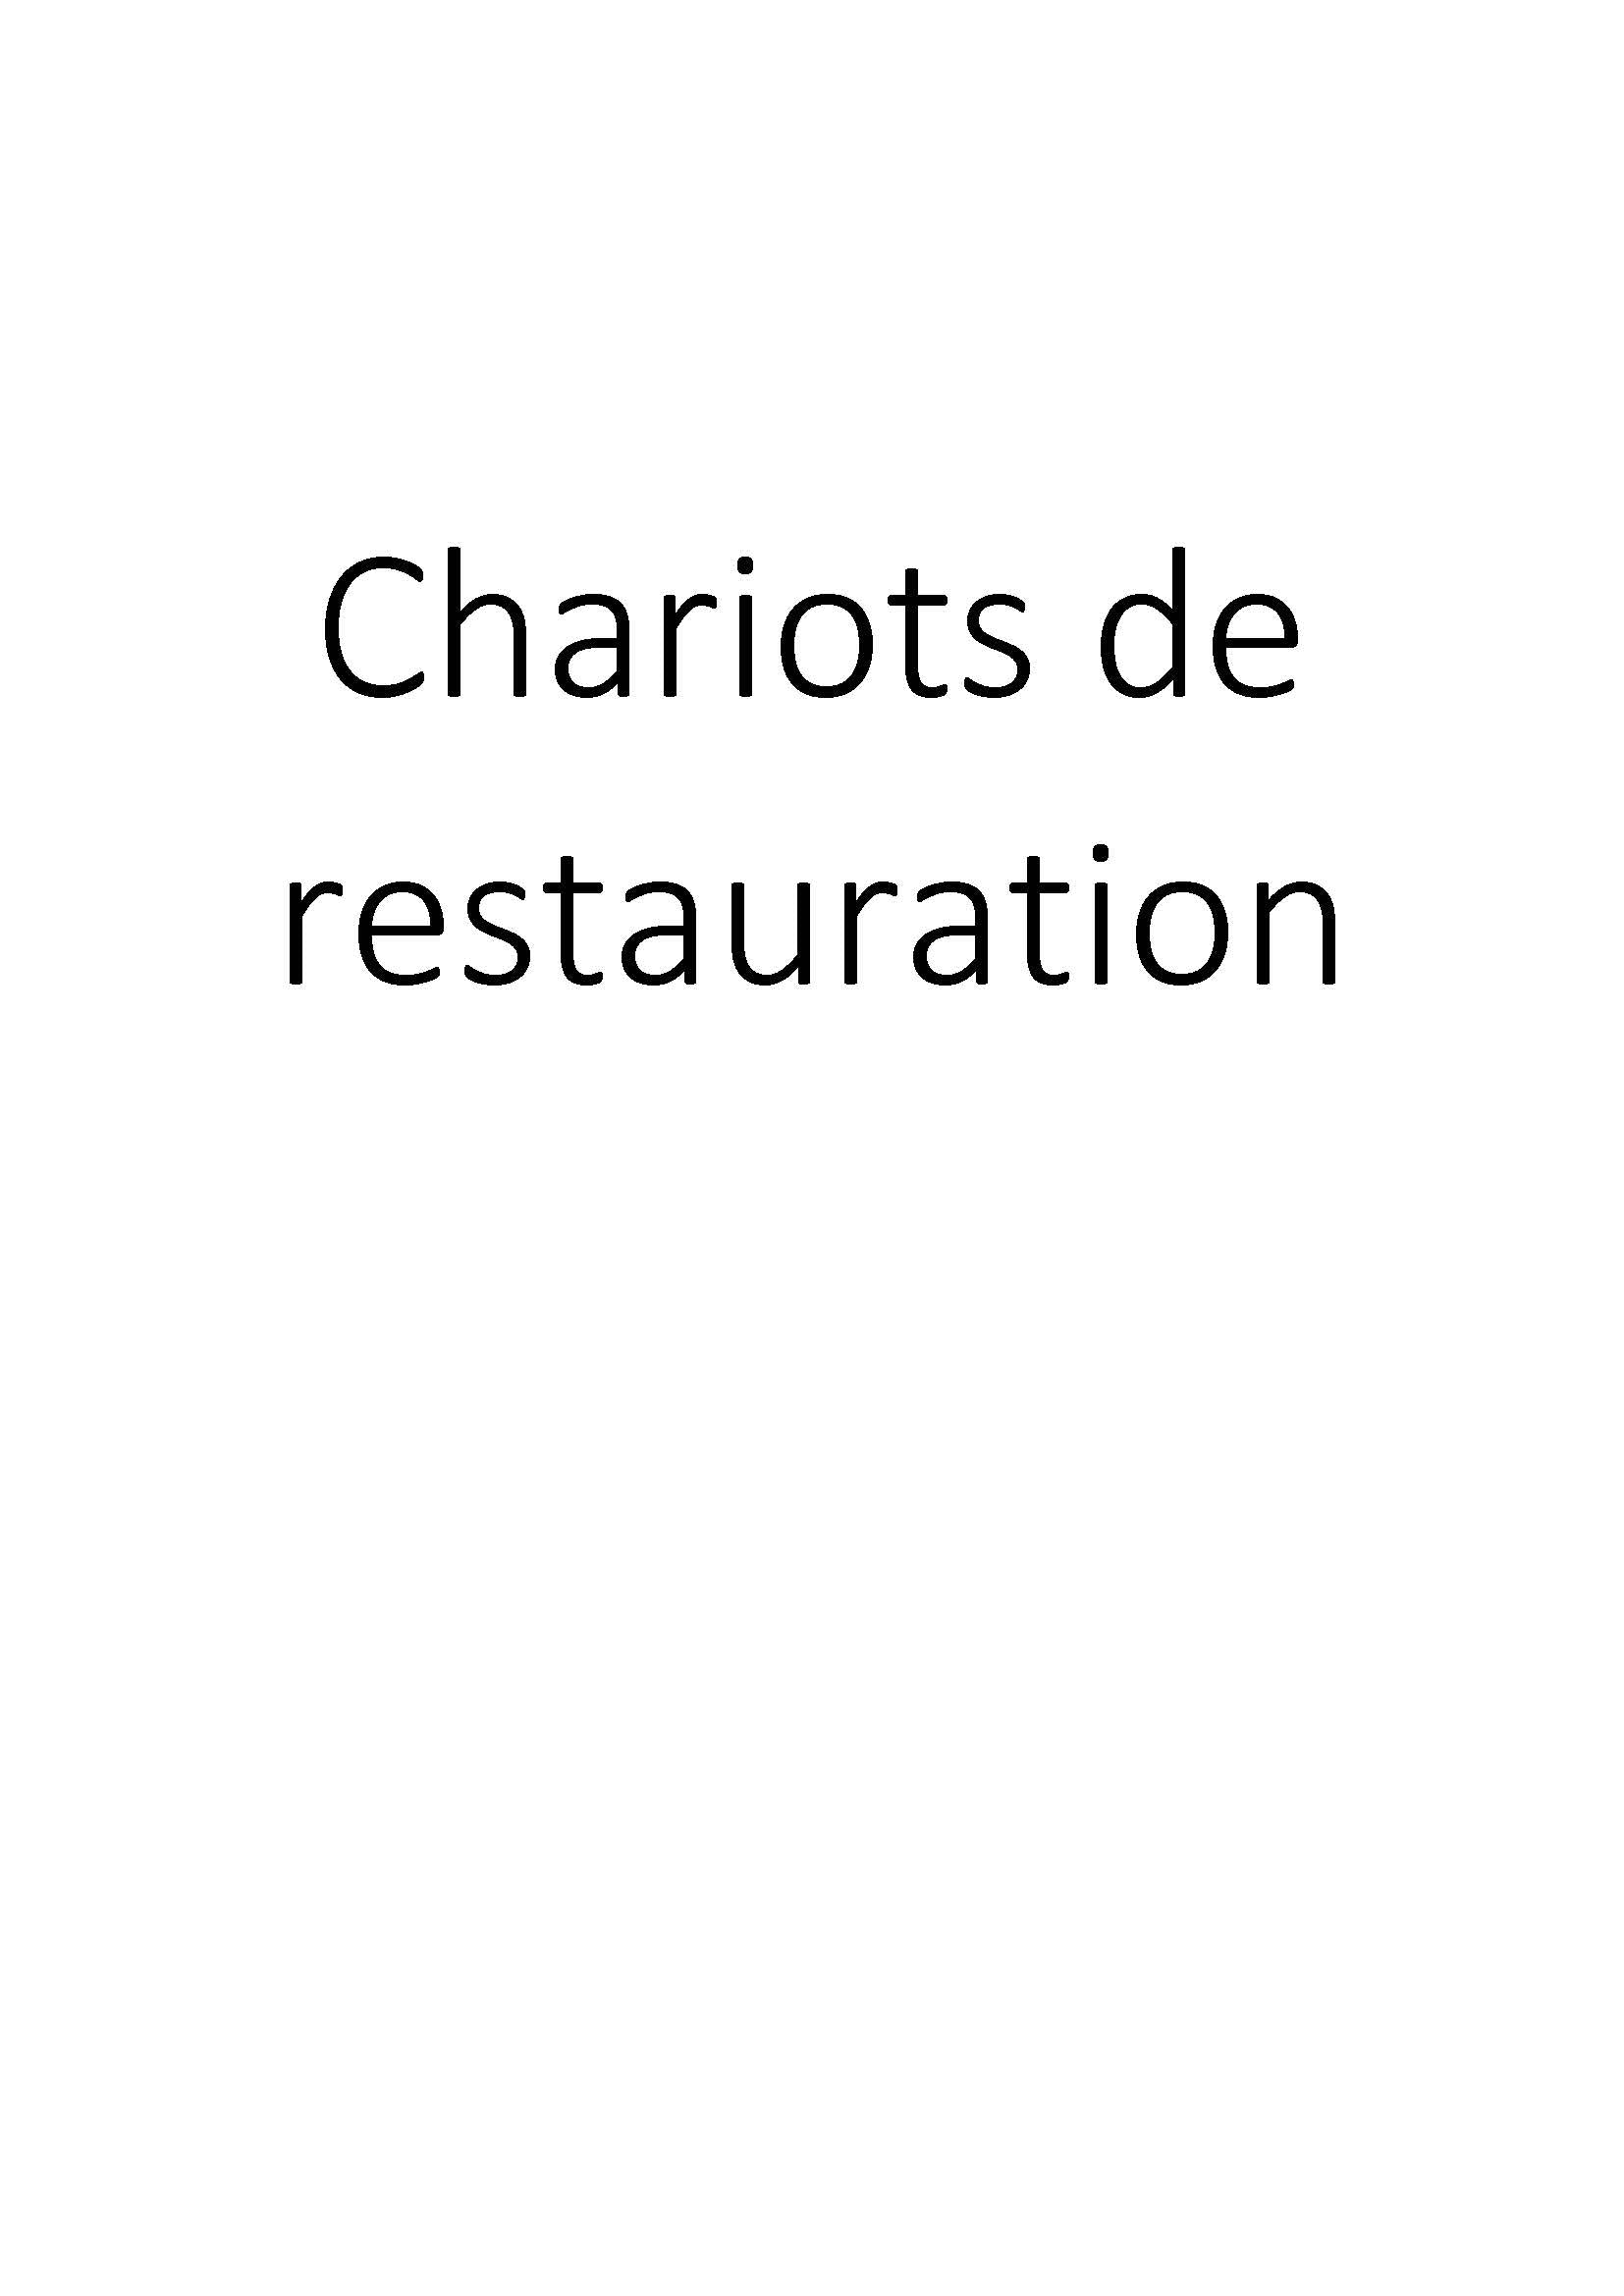 Chariots de restauration clicktofournisseur.com